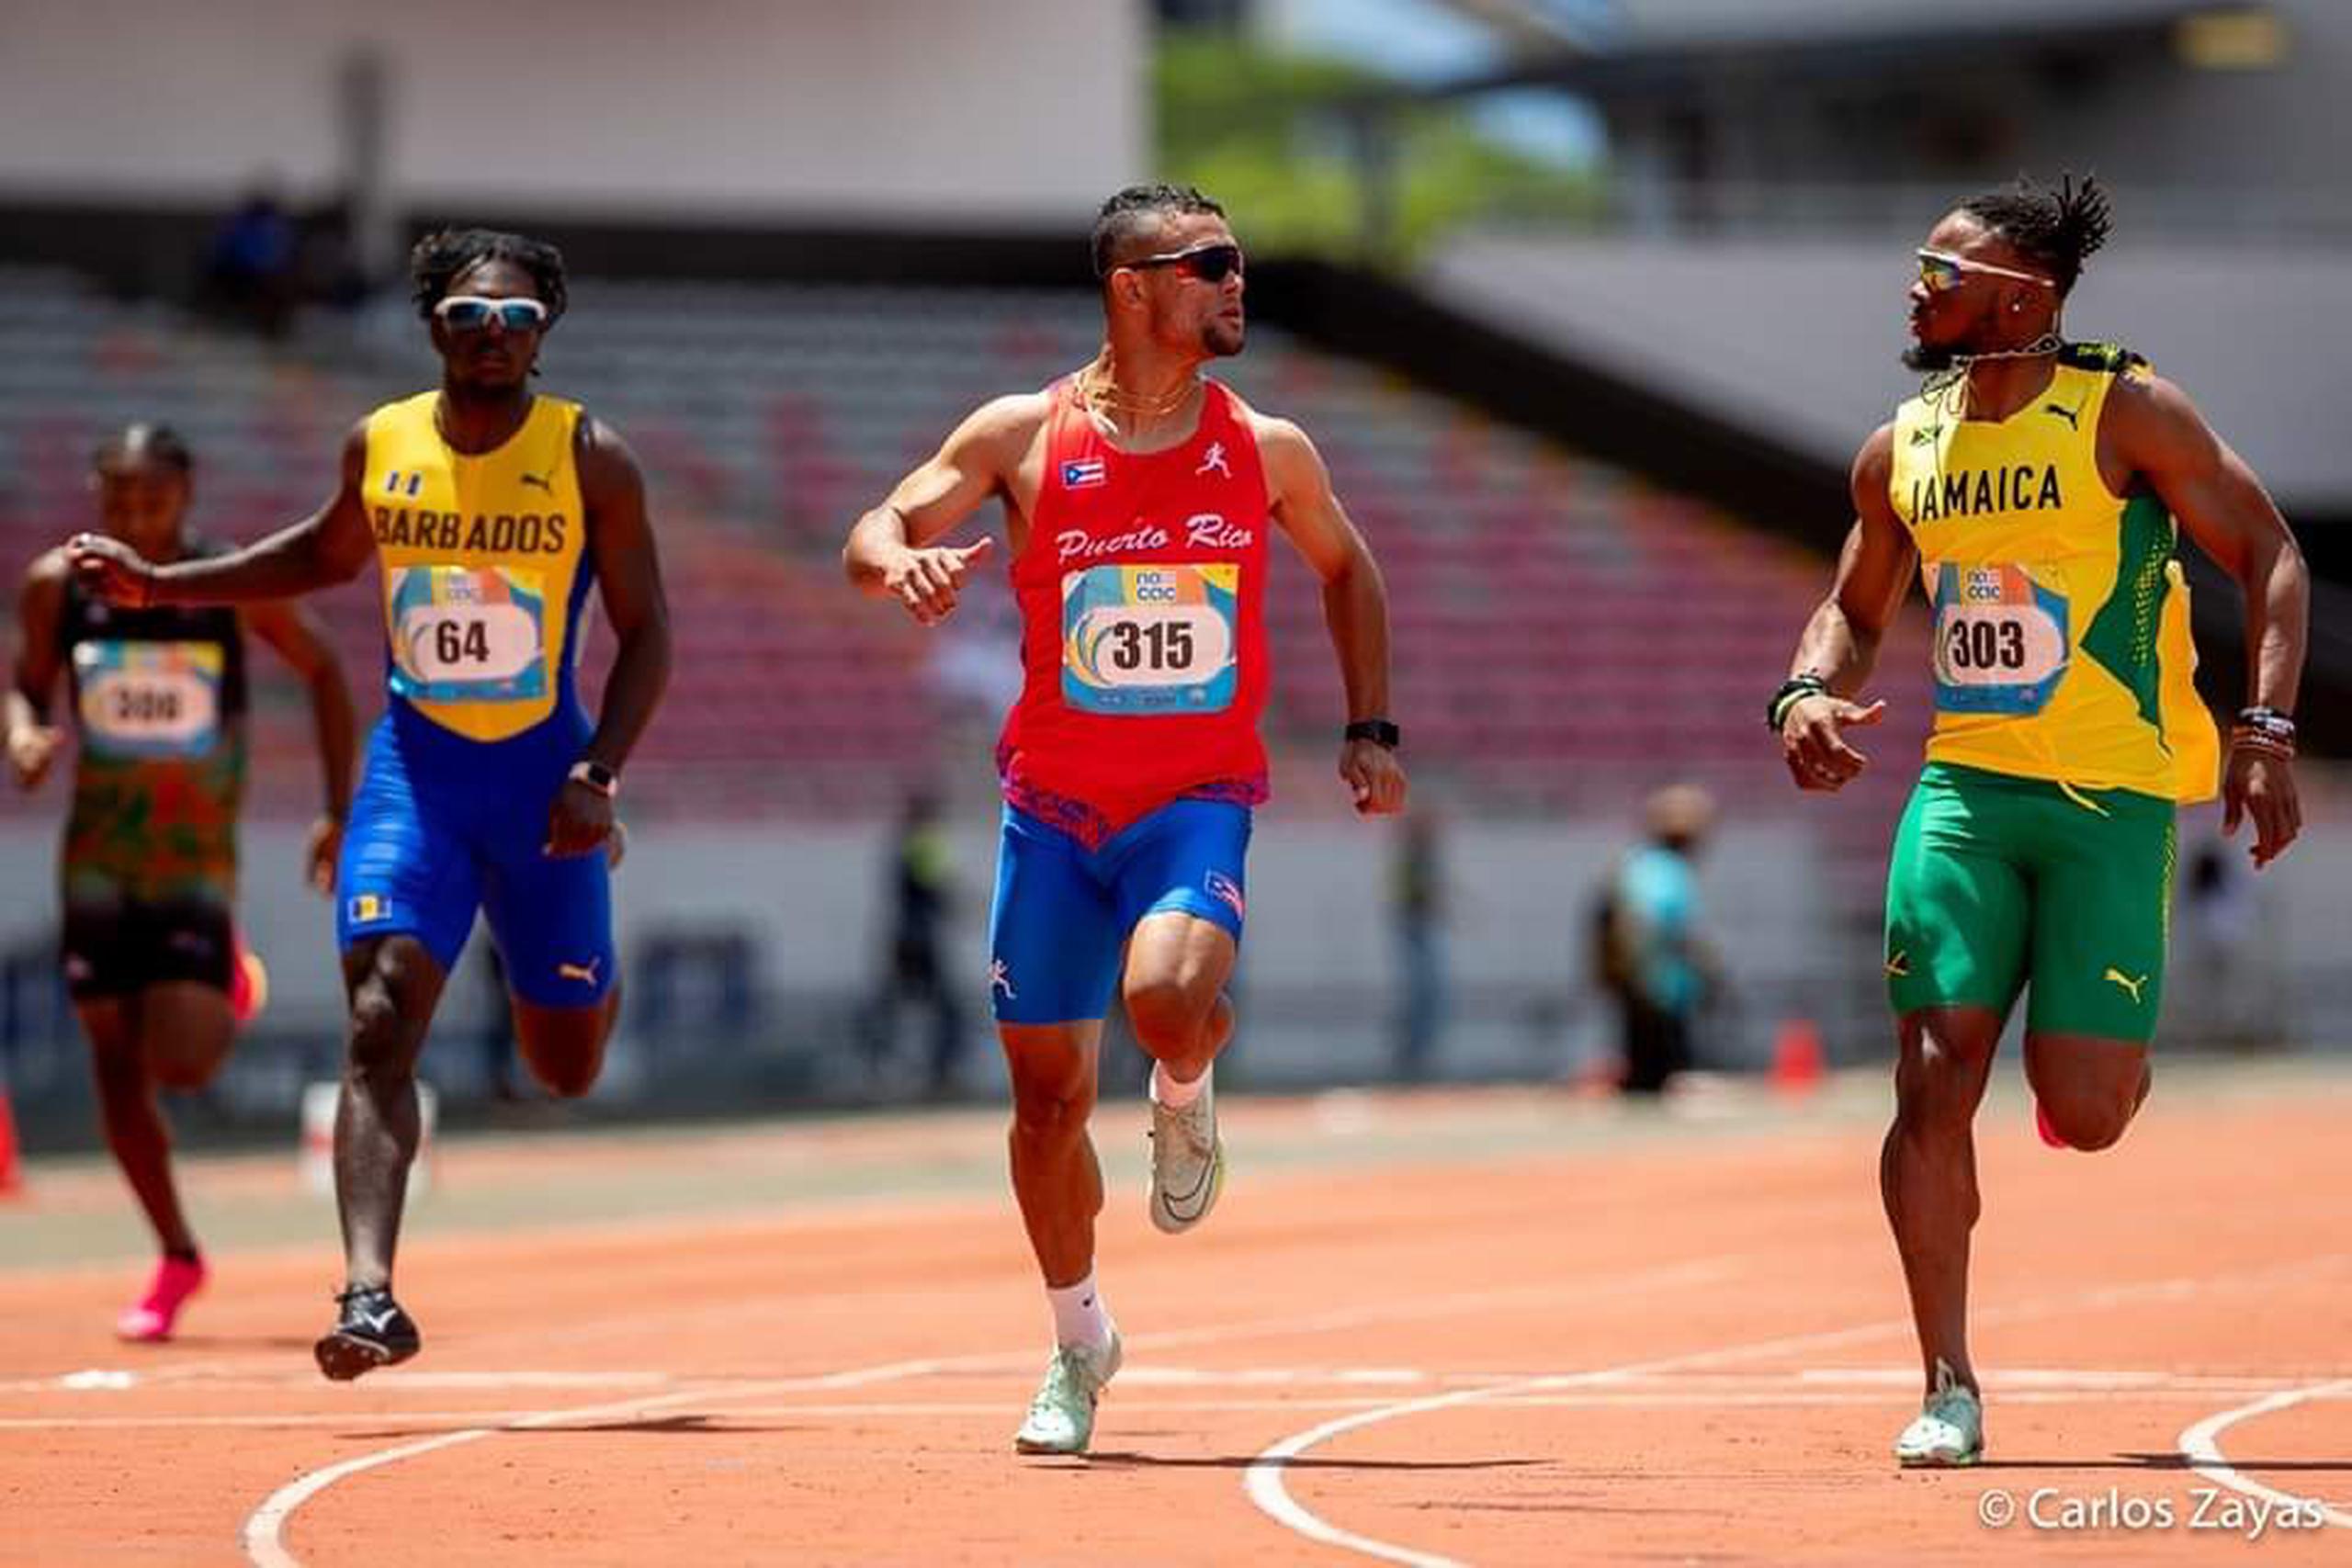 Este es el momento captado por el fotógrafo Carlos Zayas Zayas en que Diego González, al centro, cruza la meta con una nueva marca nacional adulta para Puerto Rico en los 100 metros, además de una mirada competitiva a su rival jamaiquino. La carrera fue en el Campeonato Nacac U23 el viernes en San José, Costa Rica.